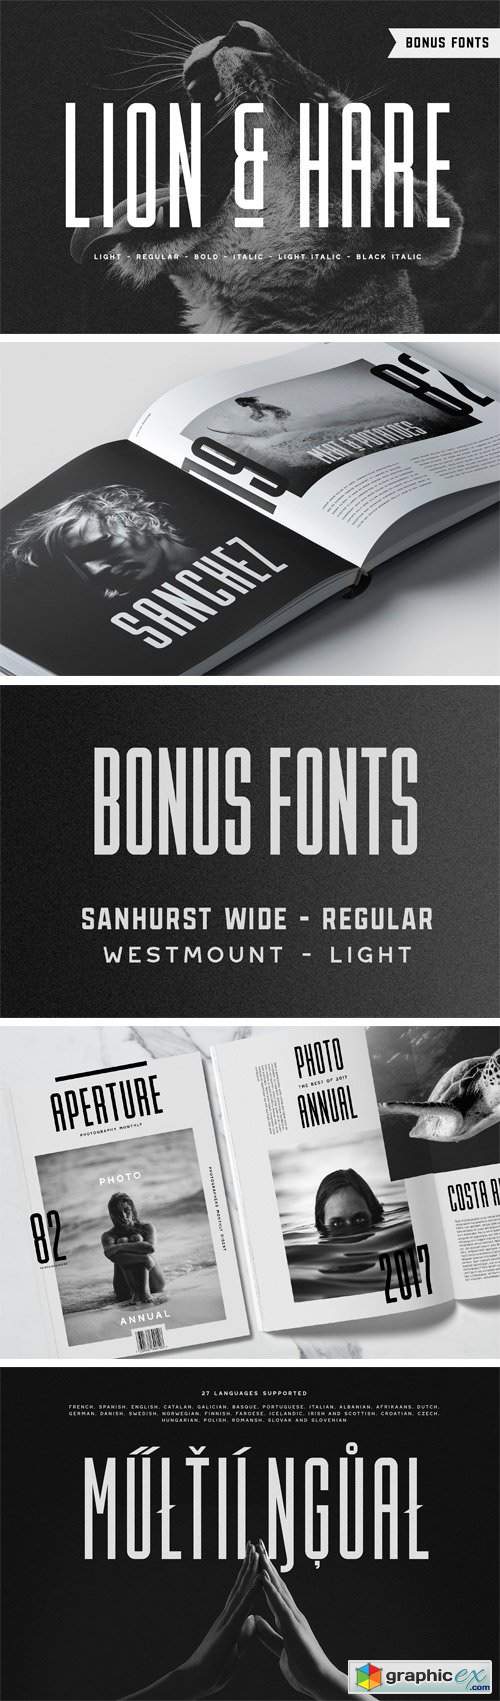 Lion & Hare Font + Bonus Fonts!